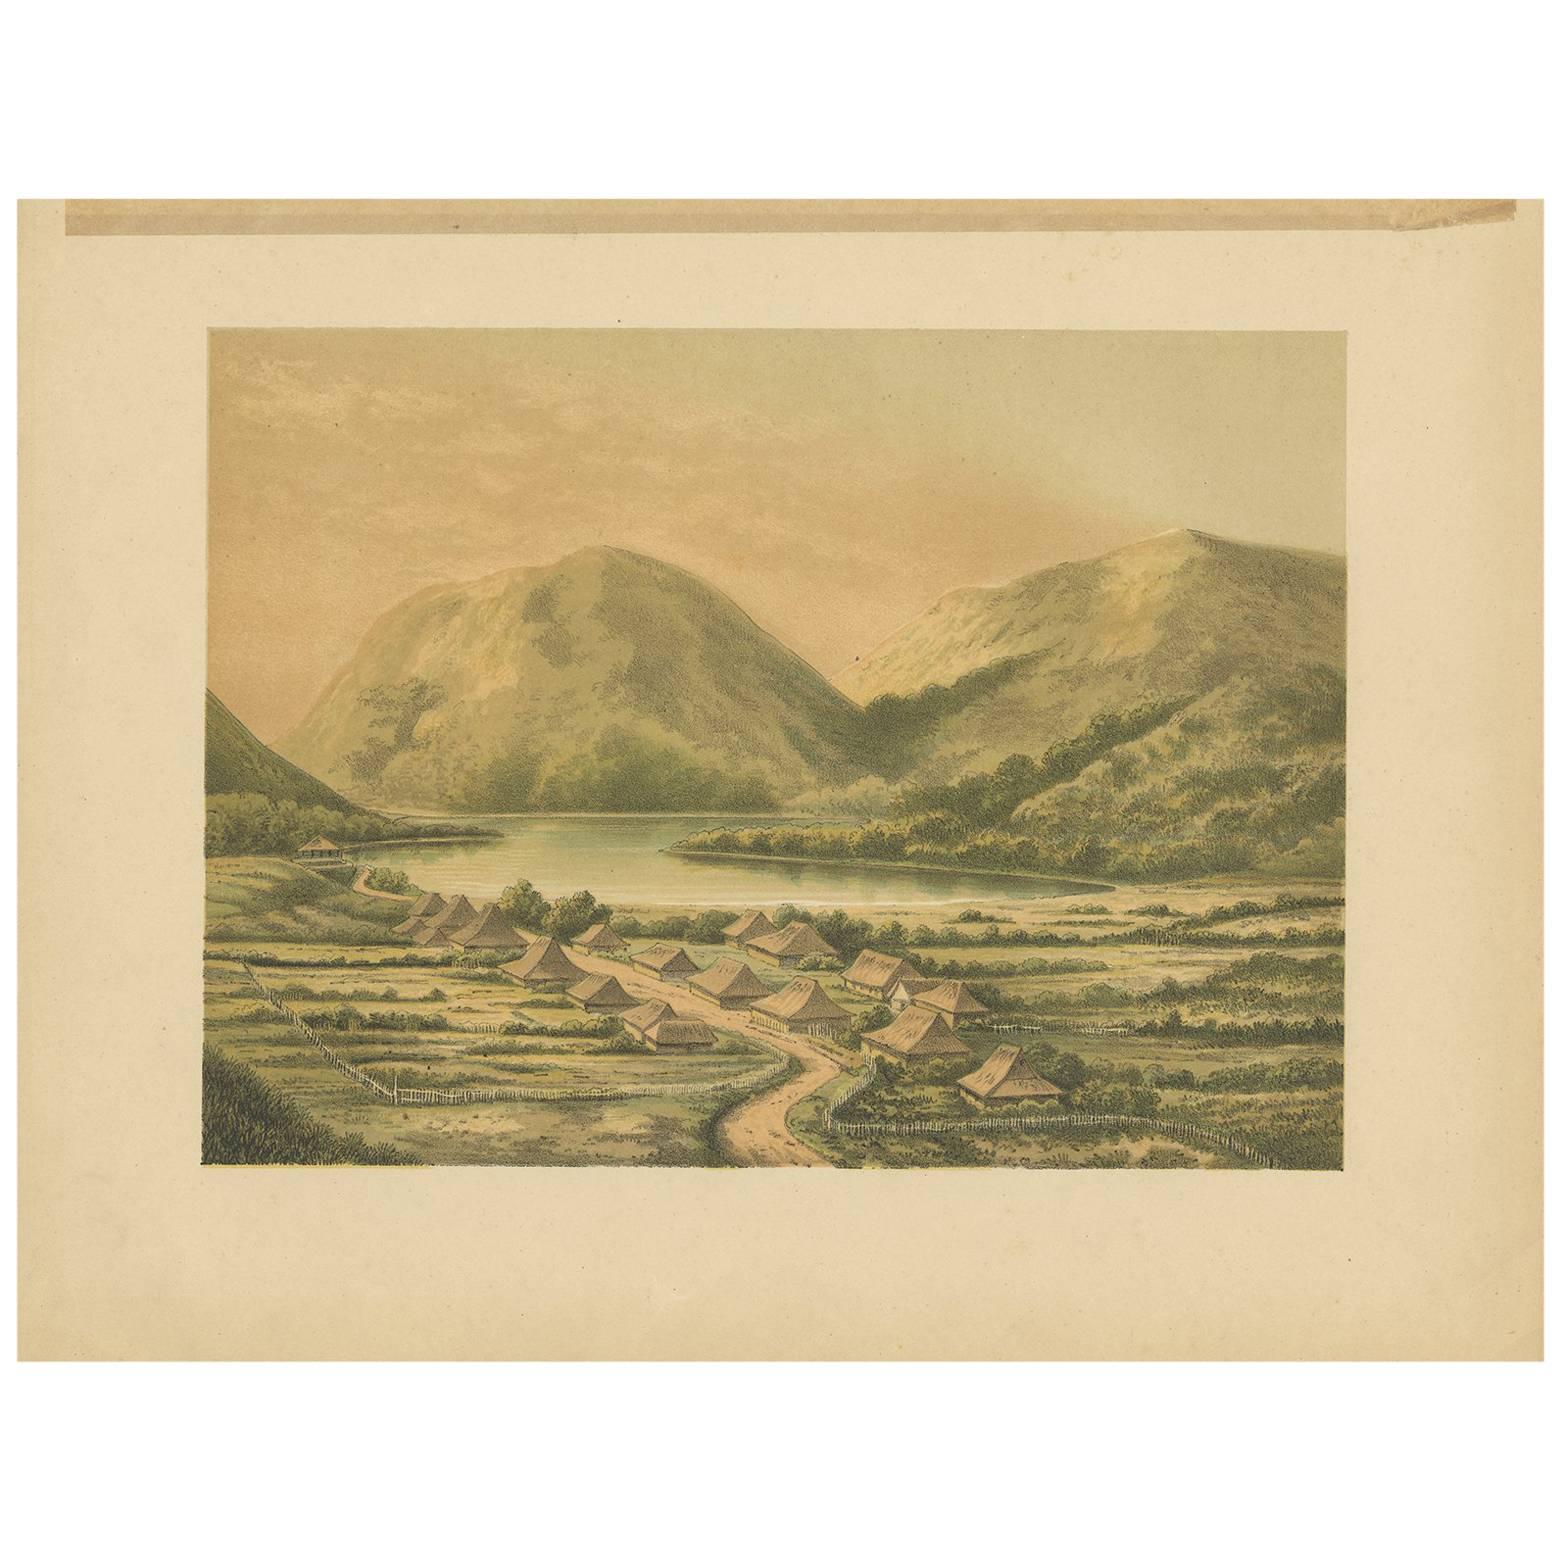 Antique Print of Desa Simpoengan 'Indonesia' by M.T.H. Perelaer, 1888